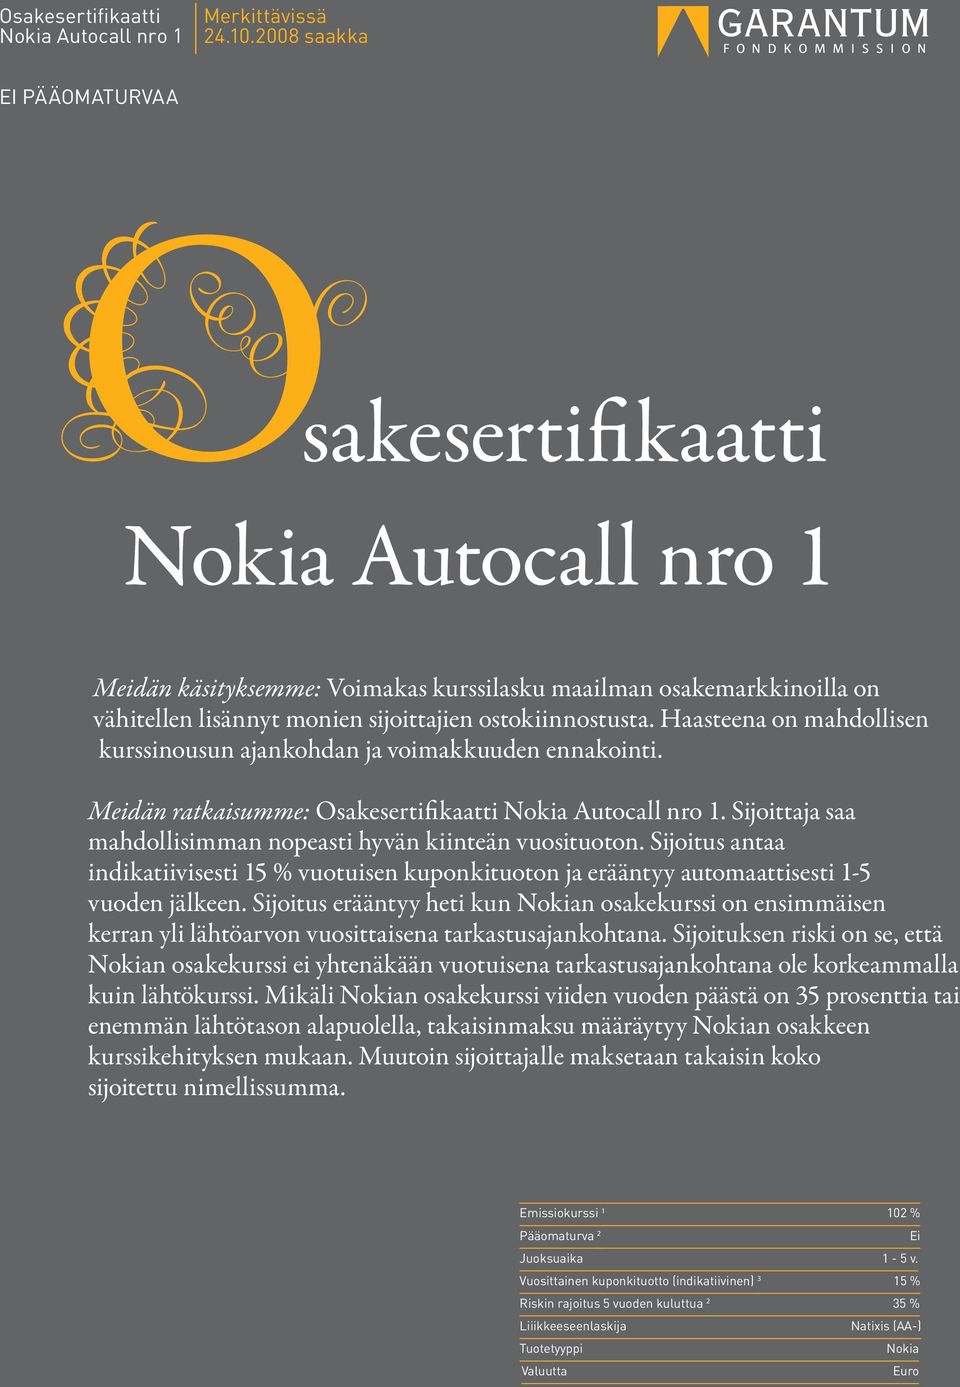 Haasteena on mahdollisen kurssinousun ajankohdan ja voimakkuuden ennakointi. Meidän ratkaisumme: Osakesertifikaatti Nokia Autocall nro 1.